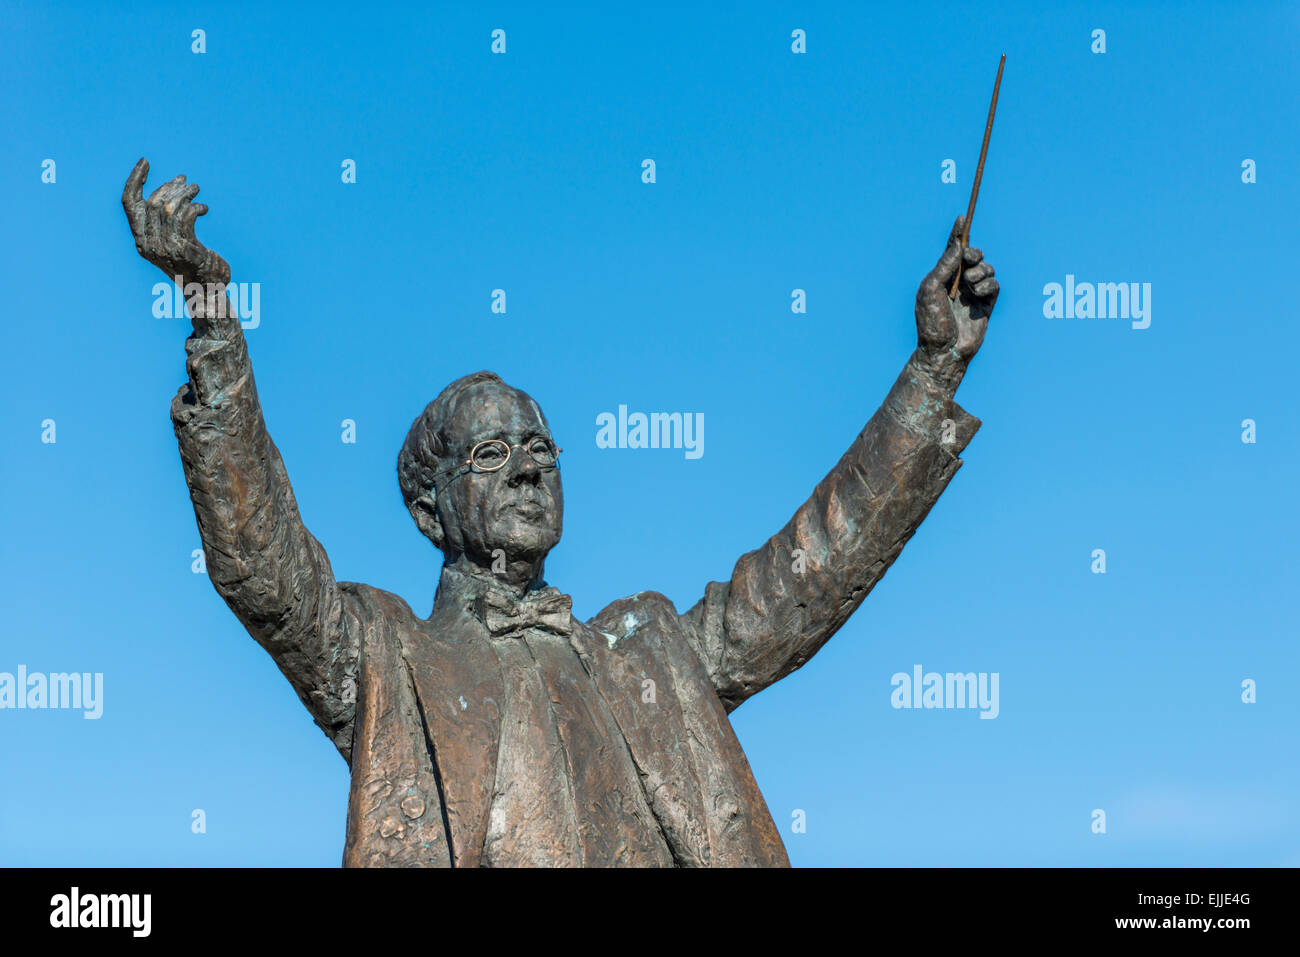 Statua di musica del compositore Gustav Holst in giardini imperiali, Cheltenham, la città dove visse Holst. Foto Stock